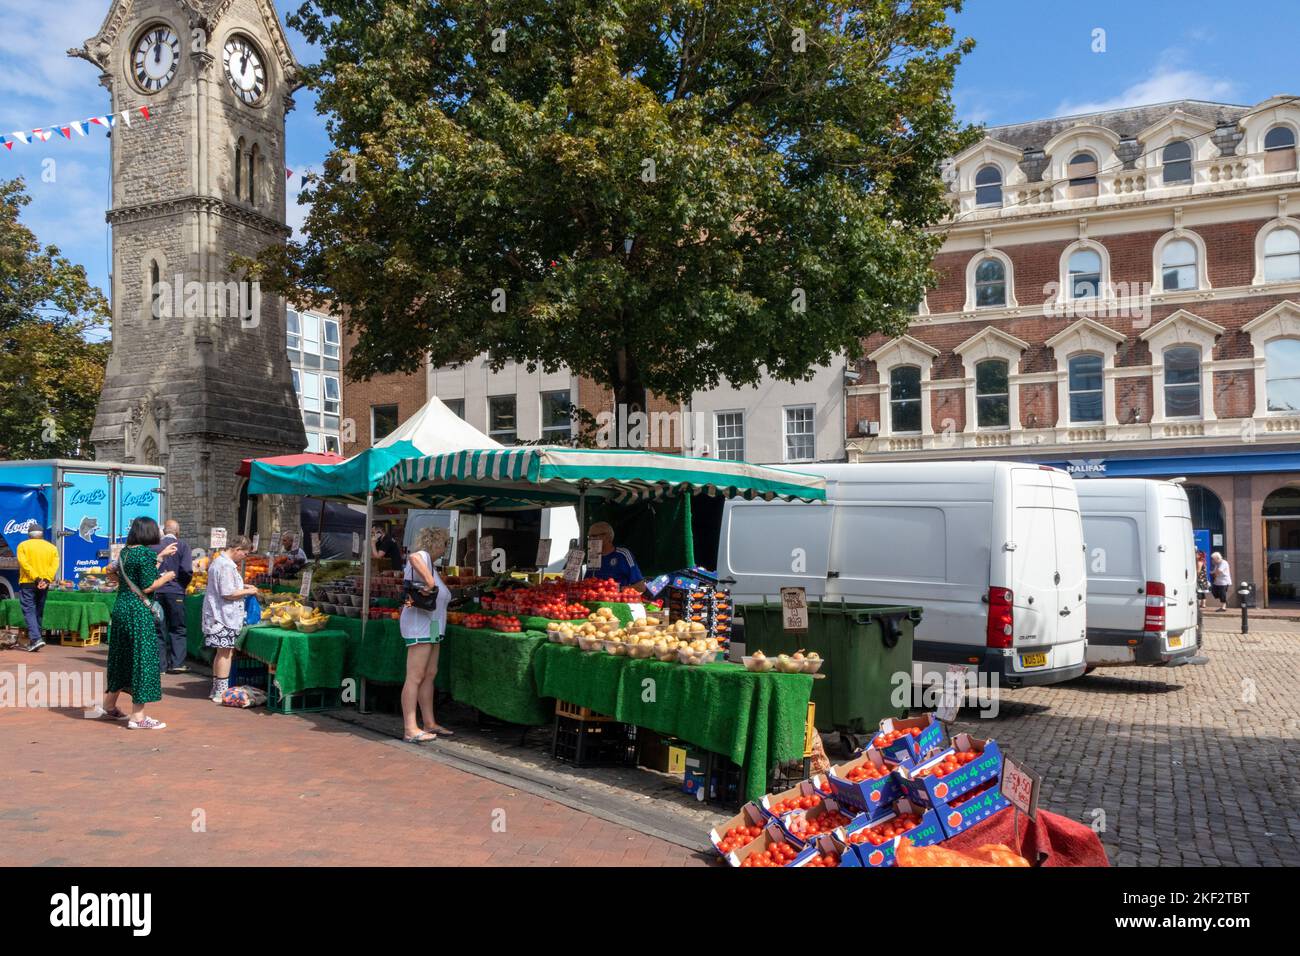 Tour de l'horloge et stand de fruits et légumes, place du marché, Aylesbury, Buckinghamshire, Angleterre Banque D'Images